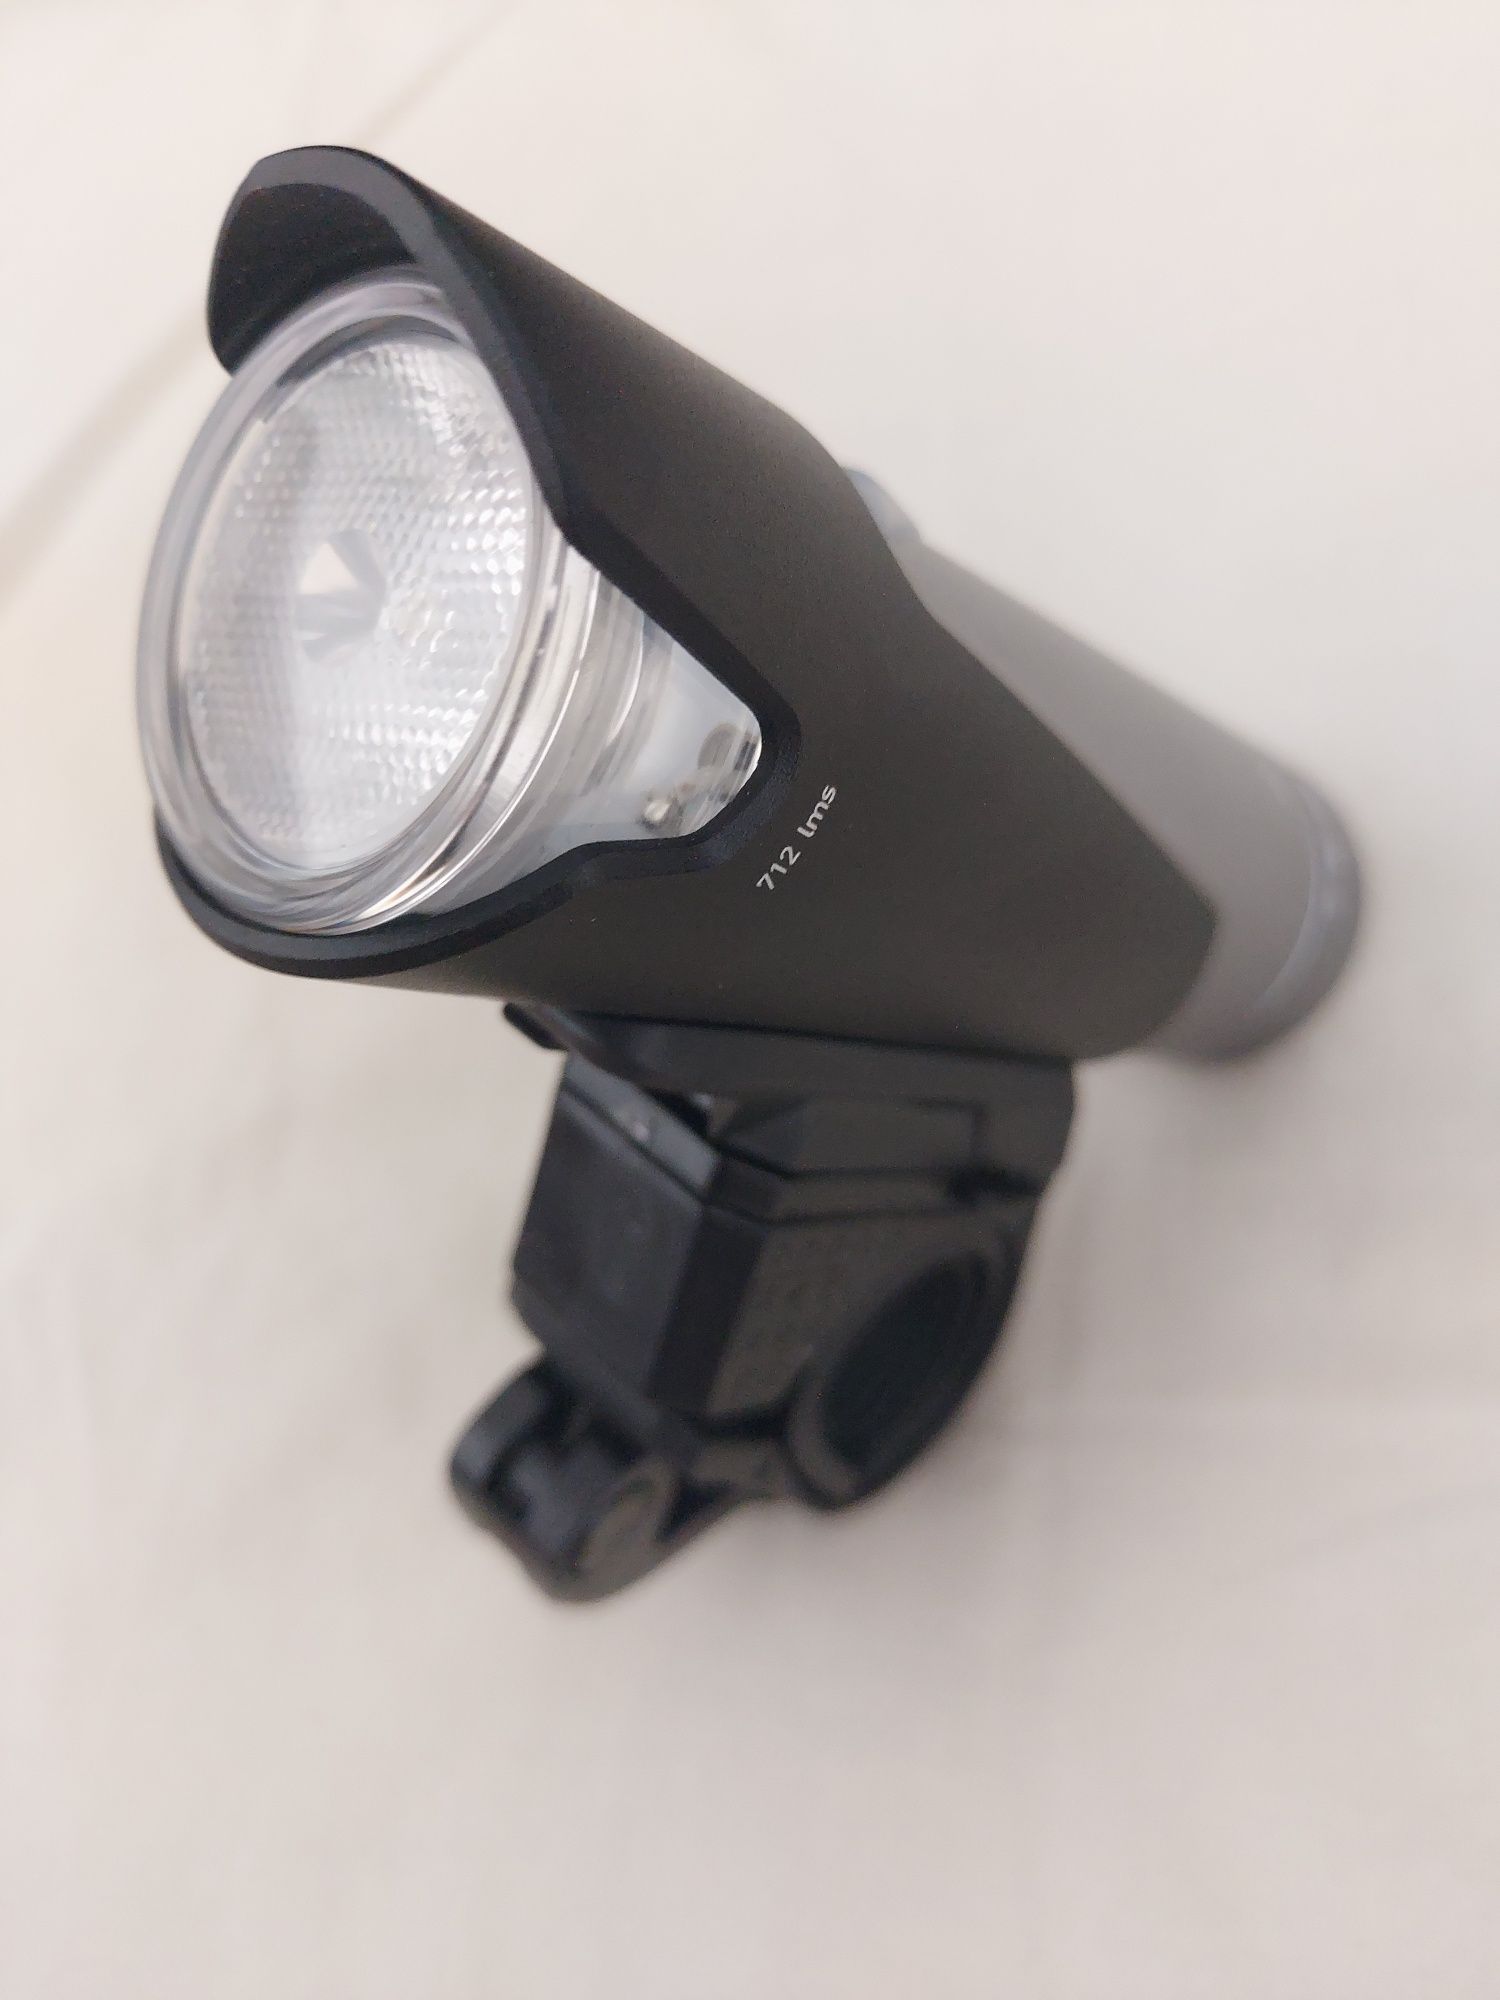 Lampka 854 lumeny boost rowerowa przednia odporna na deszcz i upadki